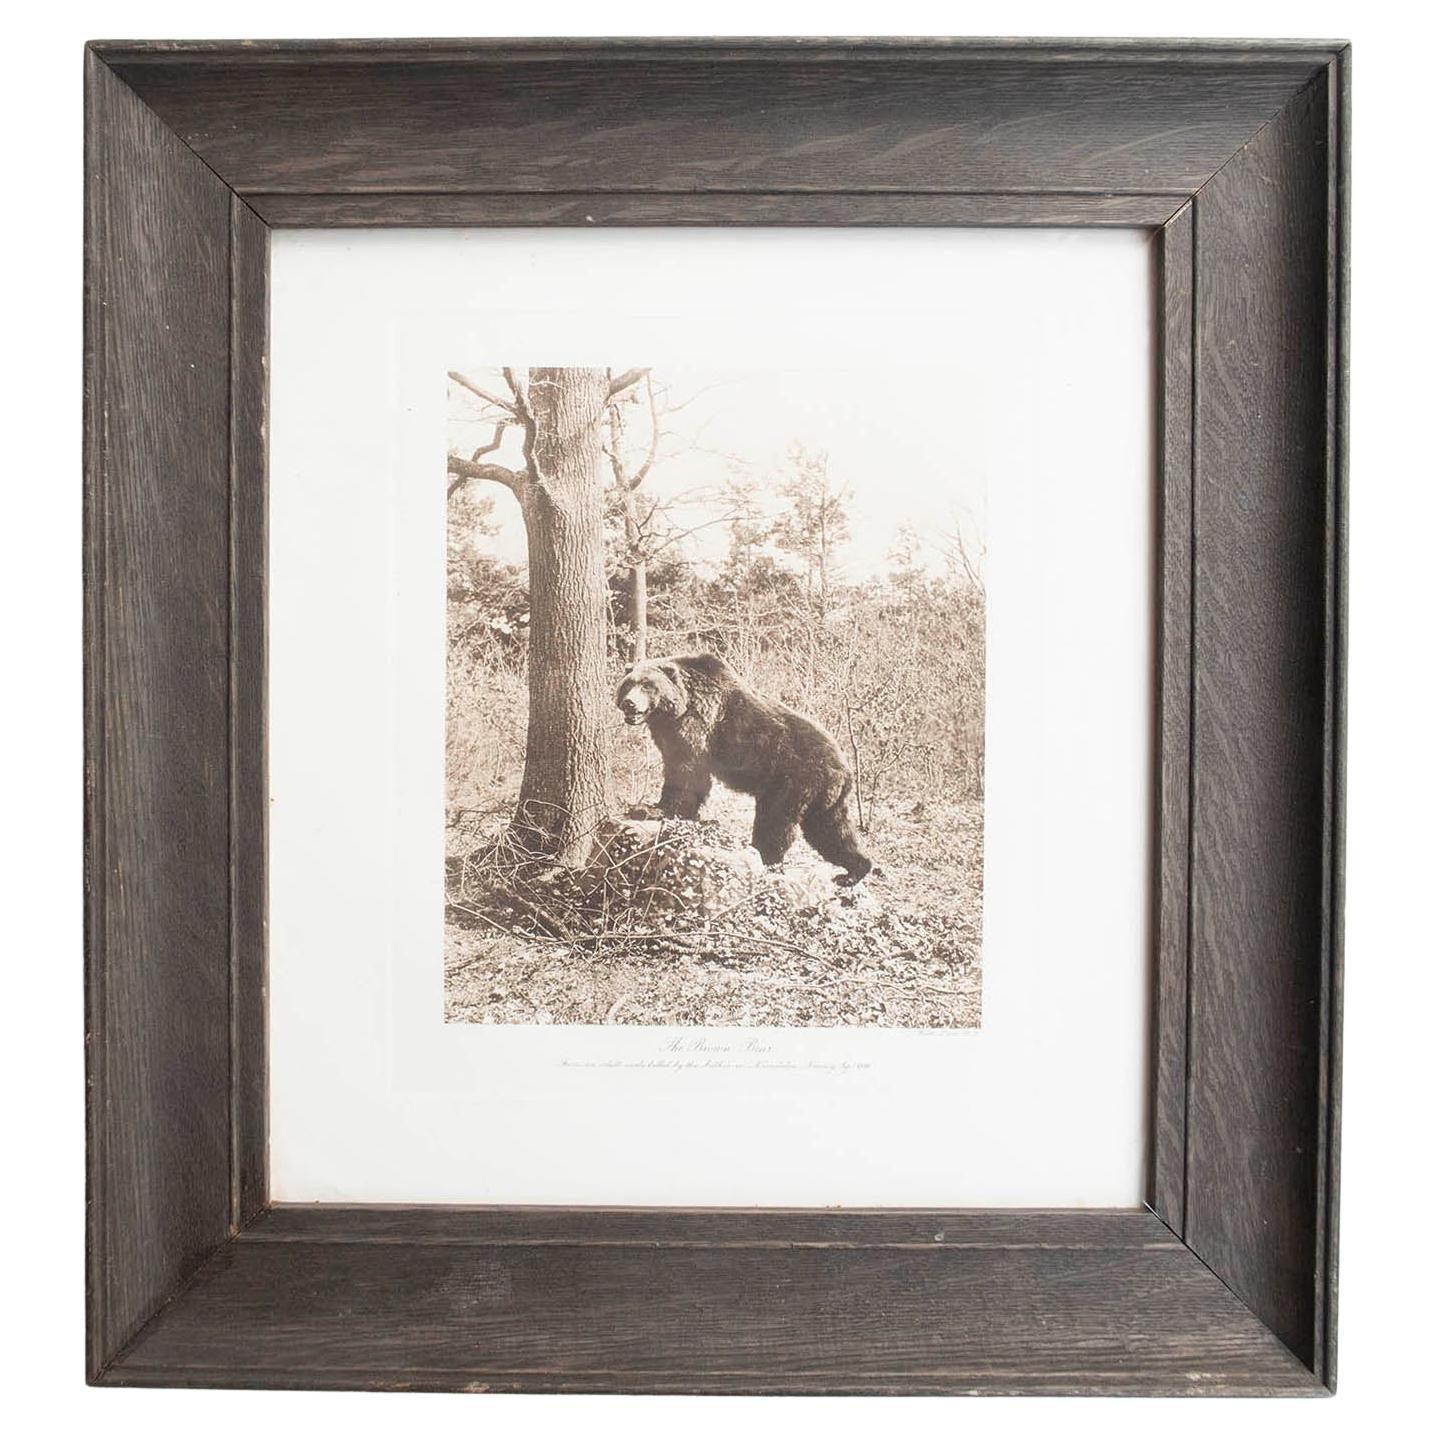 Framed Original Antique Print of A Brown Bear, circa 1900